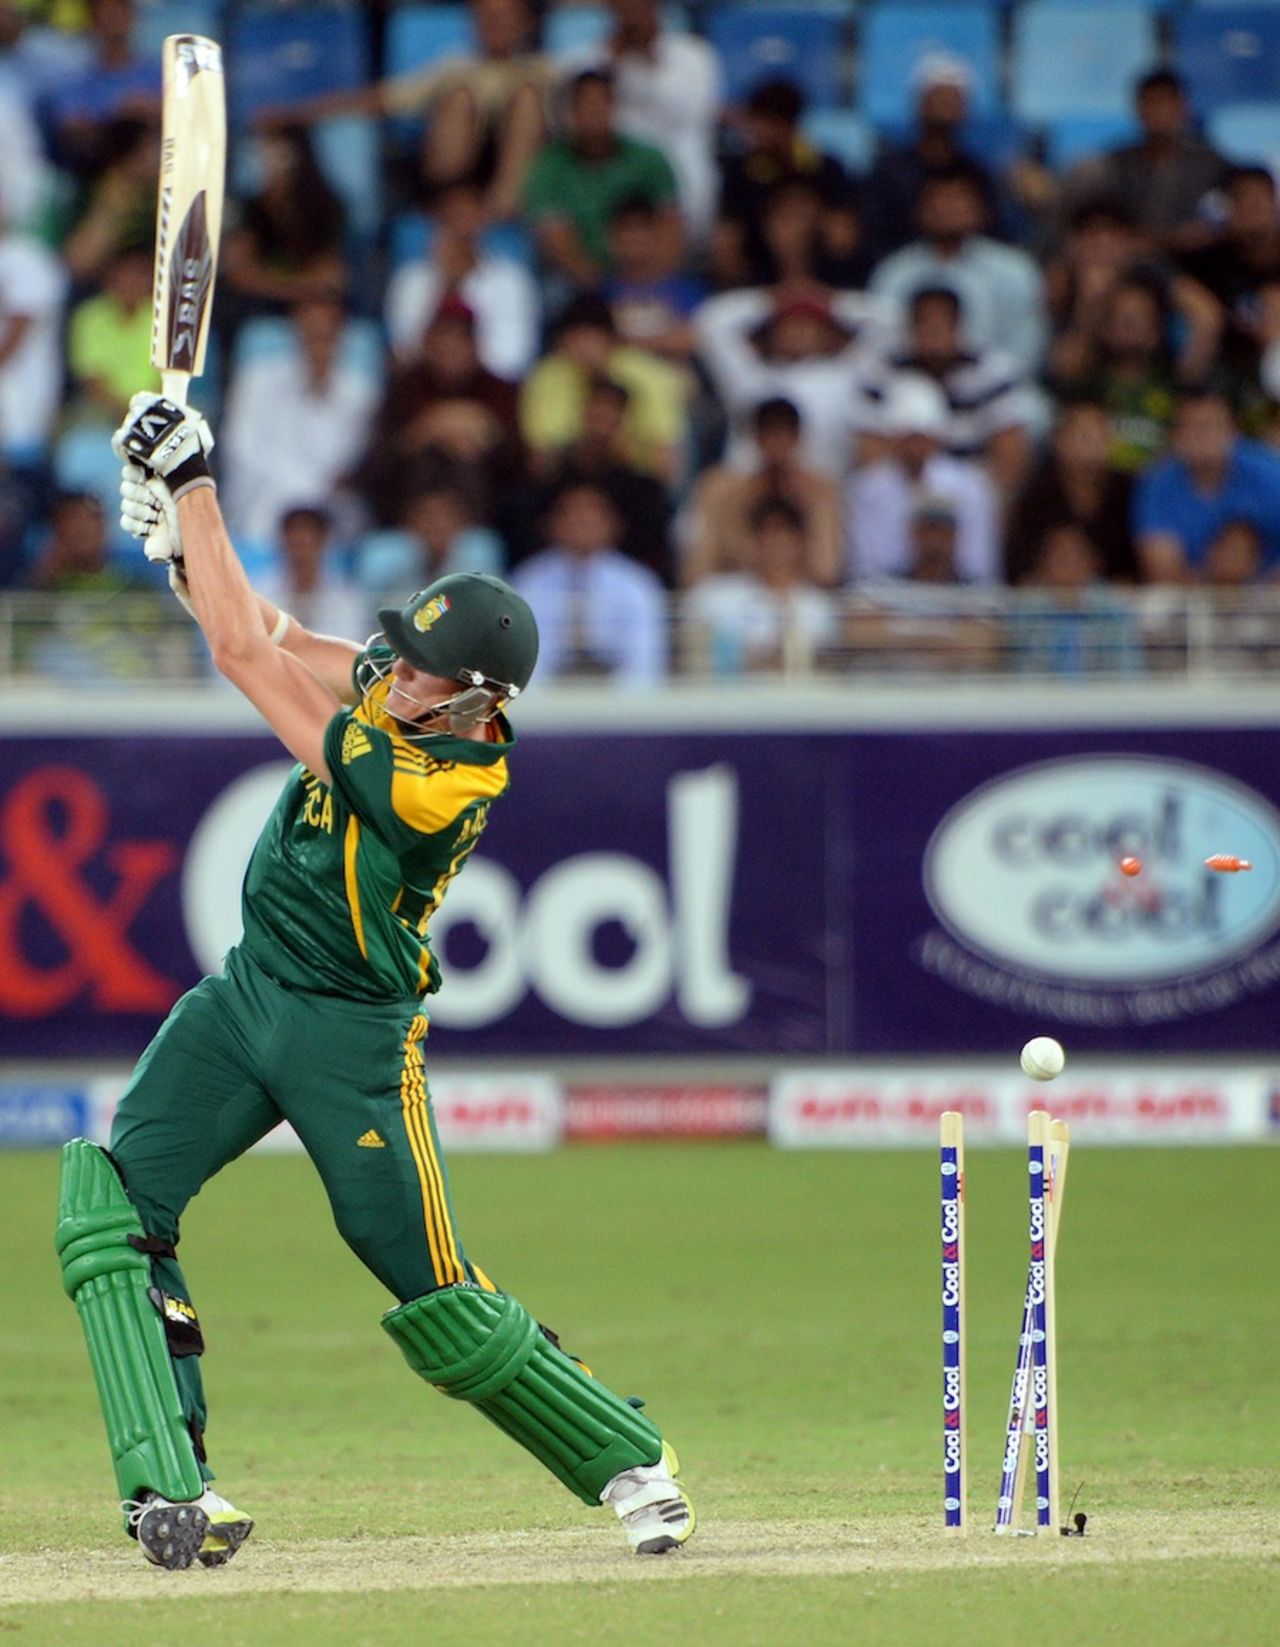 Morne Morkel was bowled for 5, Pakistan v South Africa, 2nd ODI, Dubai, November 1, 2013